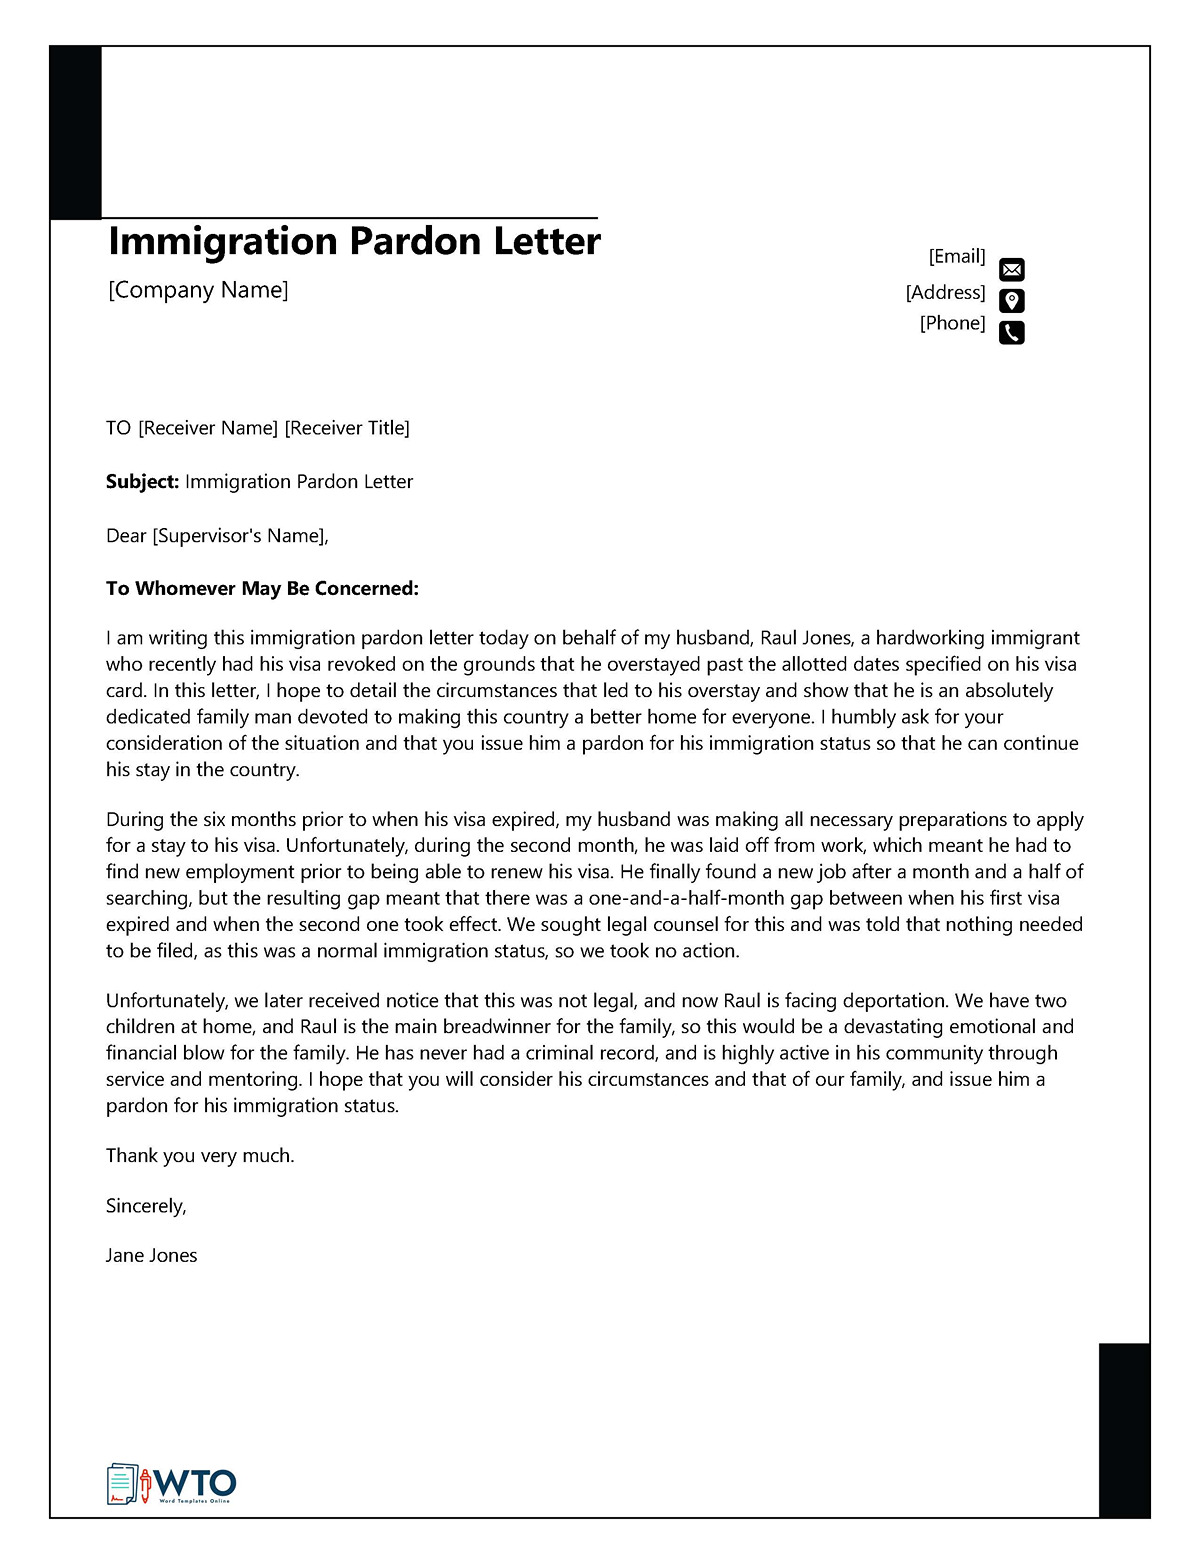 Downloadable Immigration Pardon Letter Template - Word Format